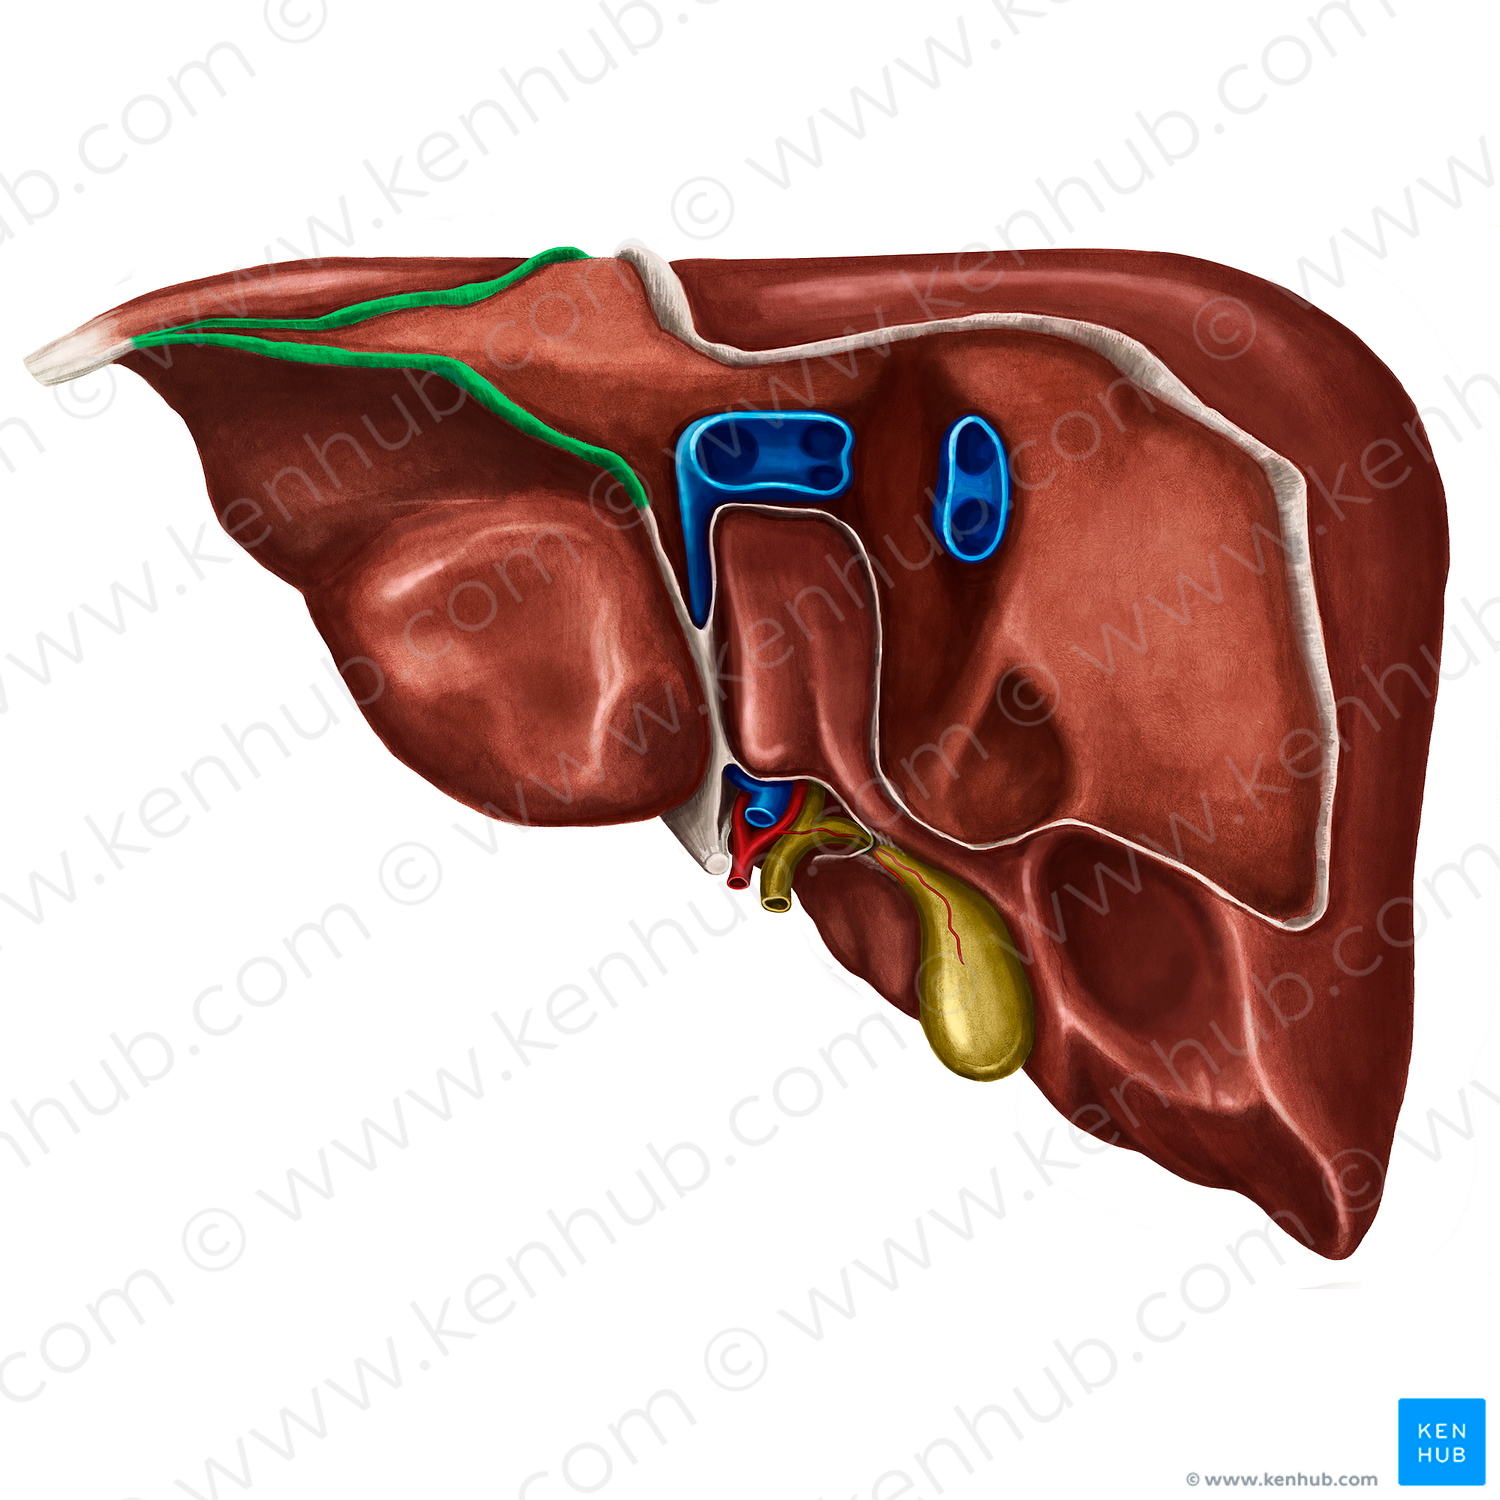 Left triangular ligament of liver (#4669)